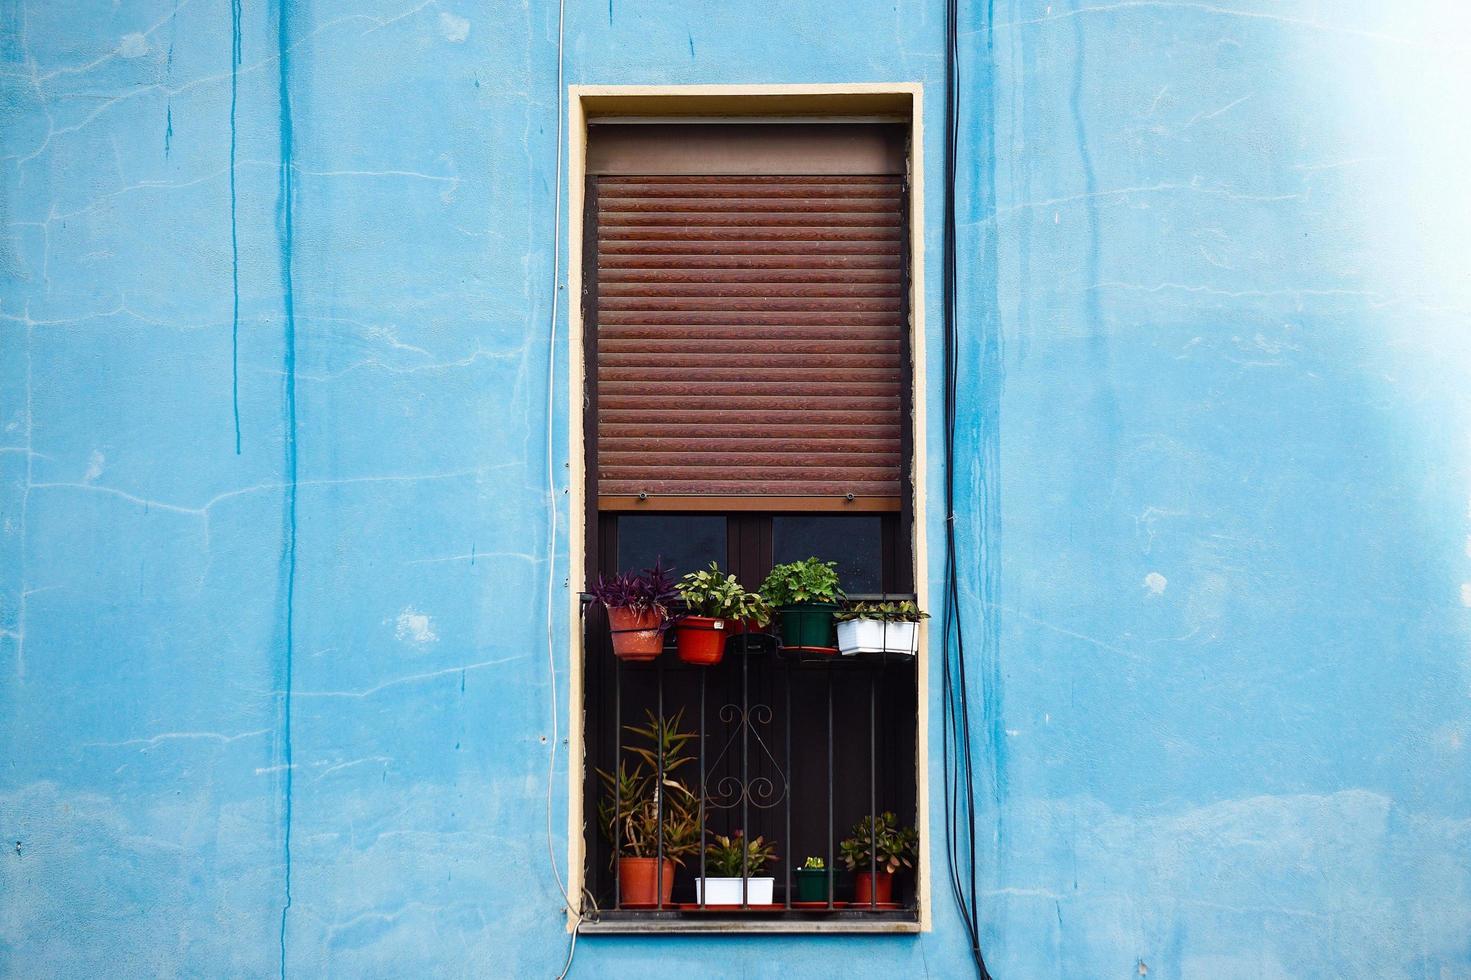 Fenêtre sur la façade bleue de la maison, l'architecture dans la ville de Bilbao, Espagne photo